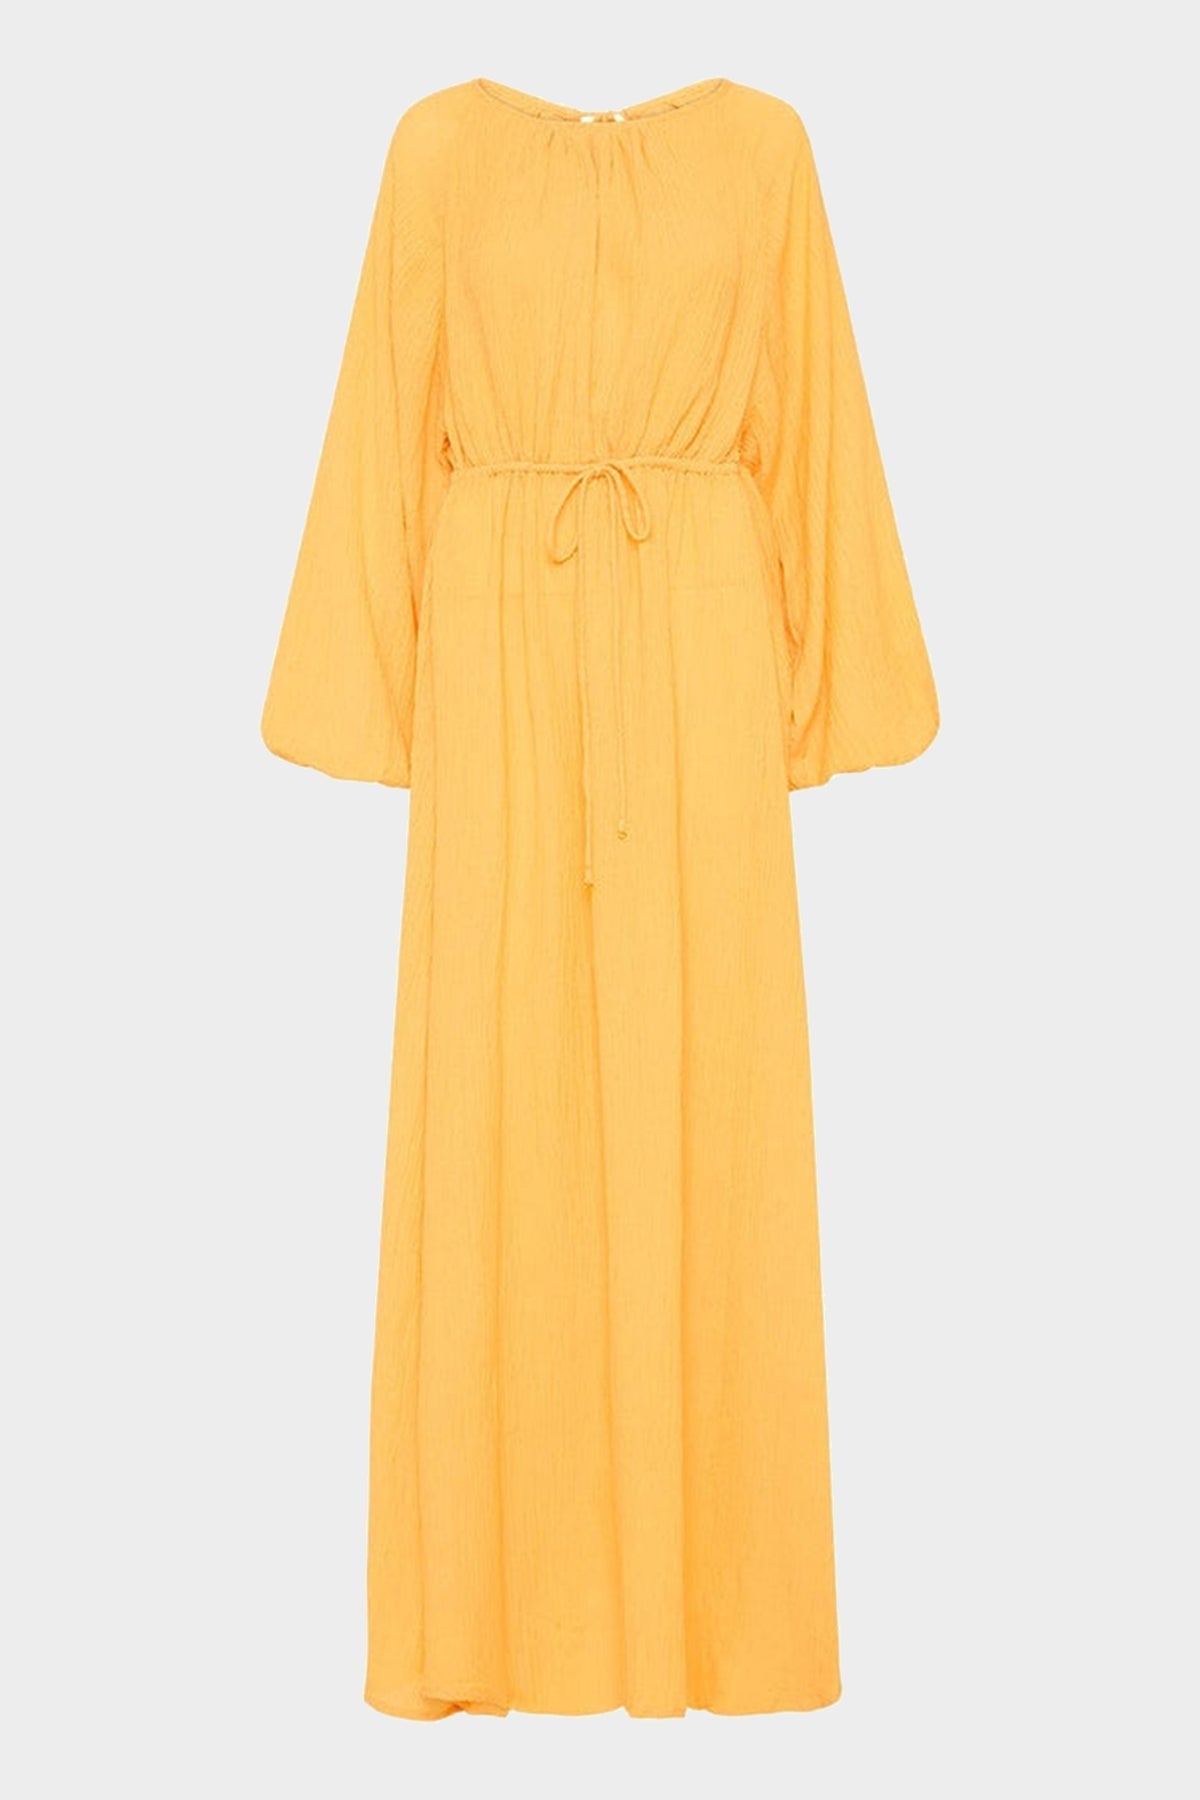 Rosalie Maxi Dress in Saffron - shop-olivia.com